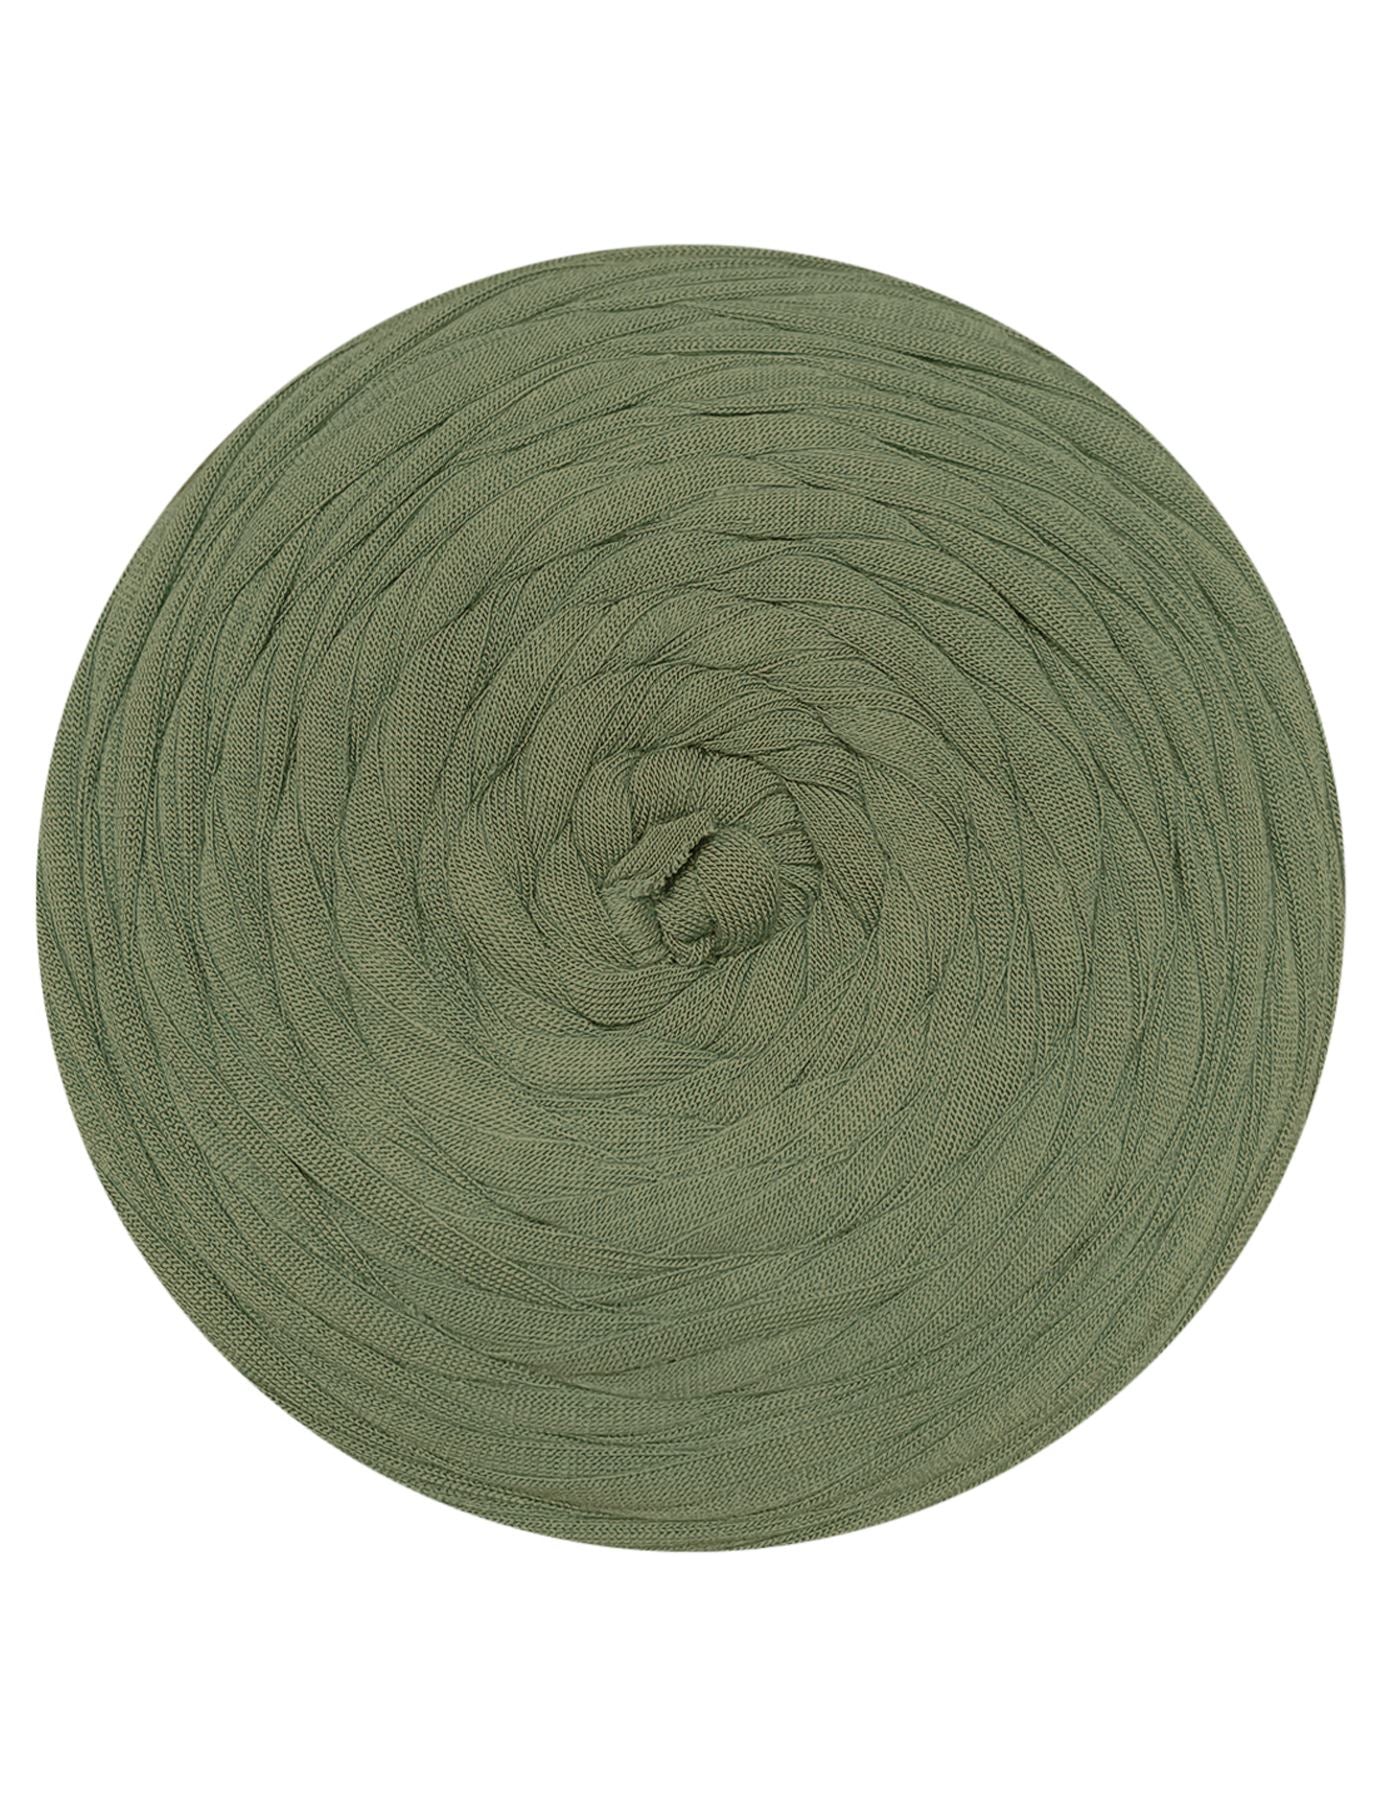 Muted sage green t-shirt yarn (100-120m)